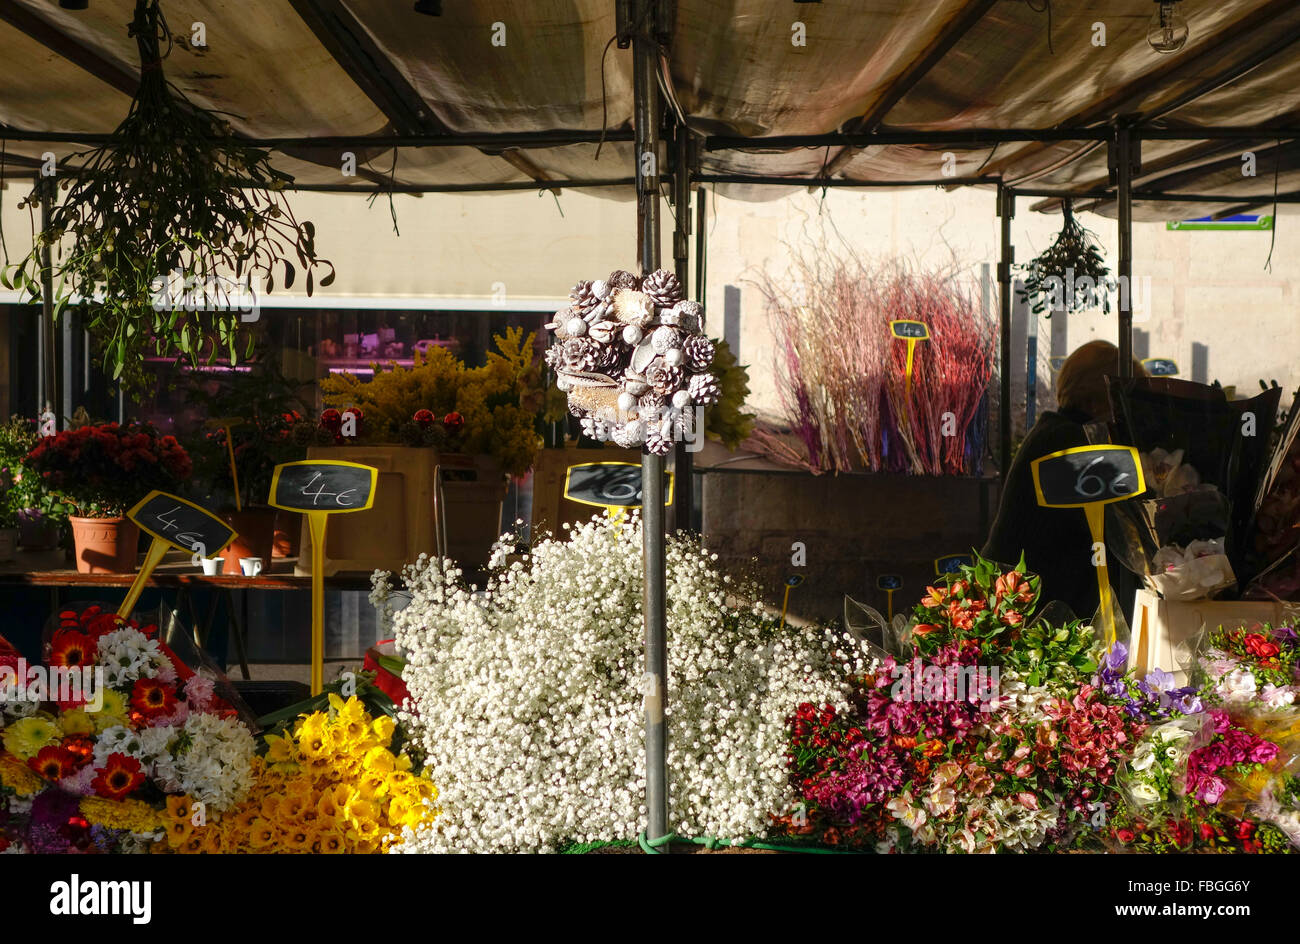 Blume-Stall mit Blumen auf dem Display auf dem Markt am Ort d'aligre, einen lebhaften Markt auf dem Platz Aligre. Paris, Frankreich. Stockfoto